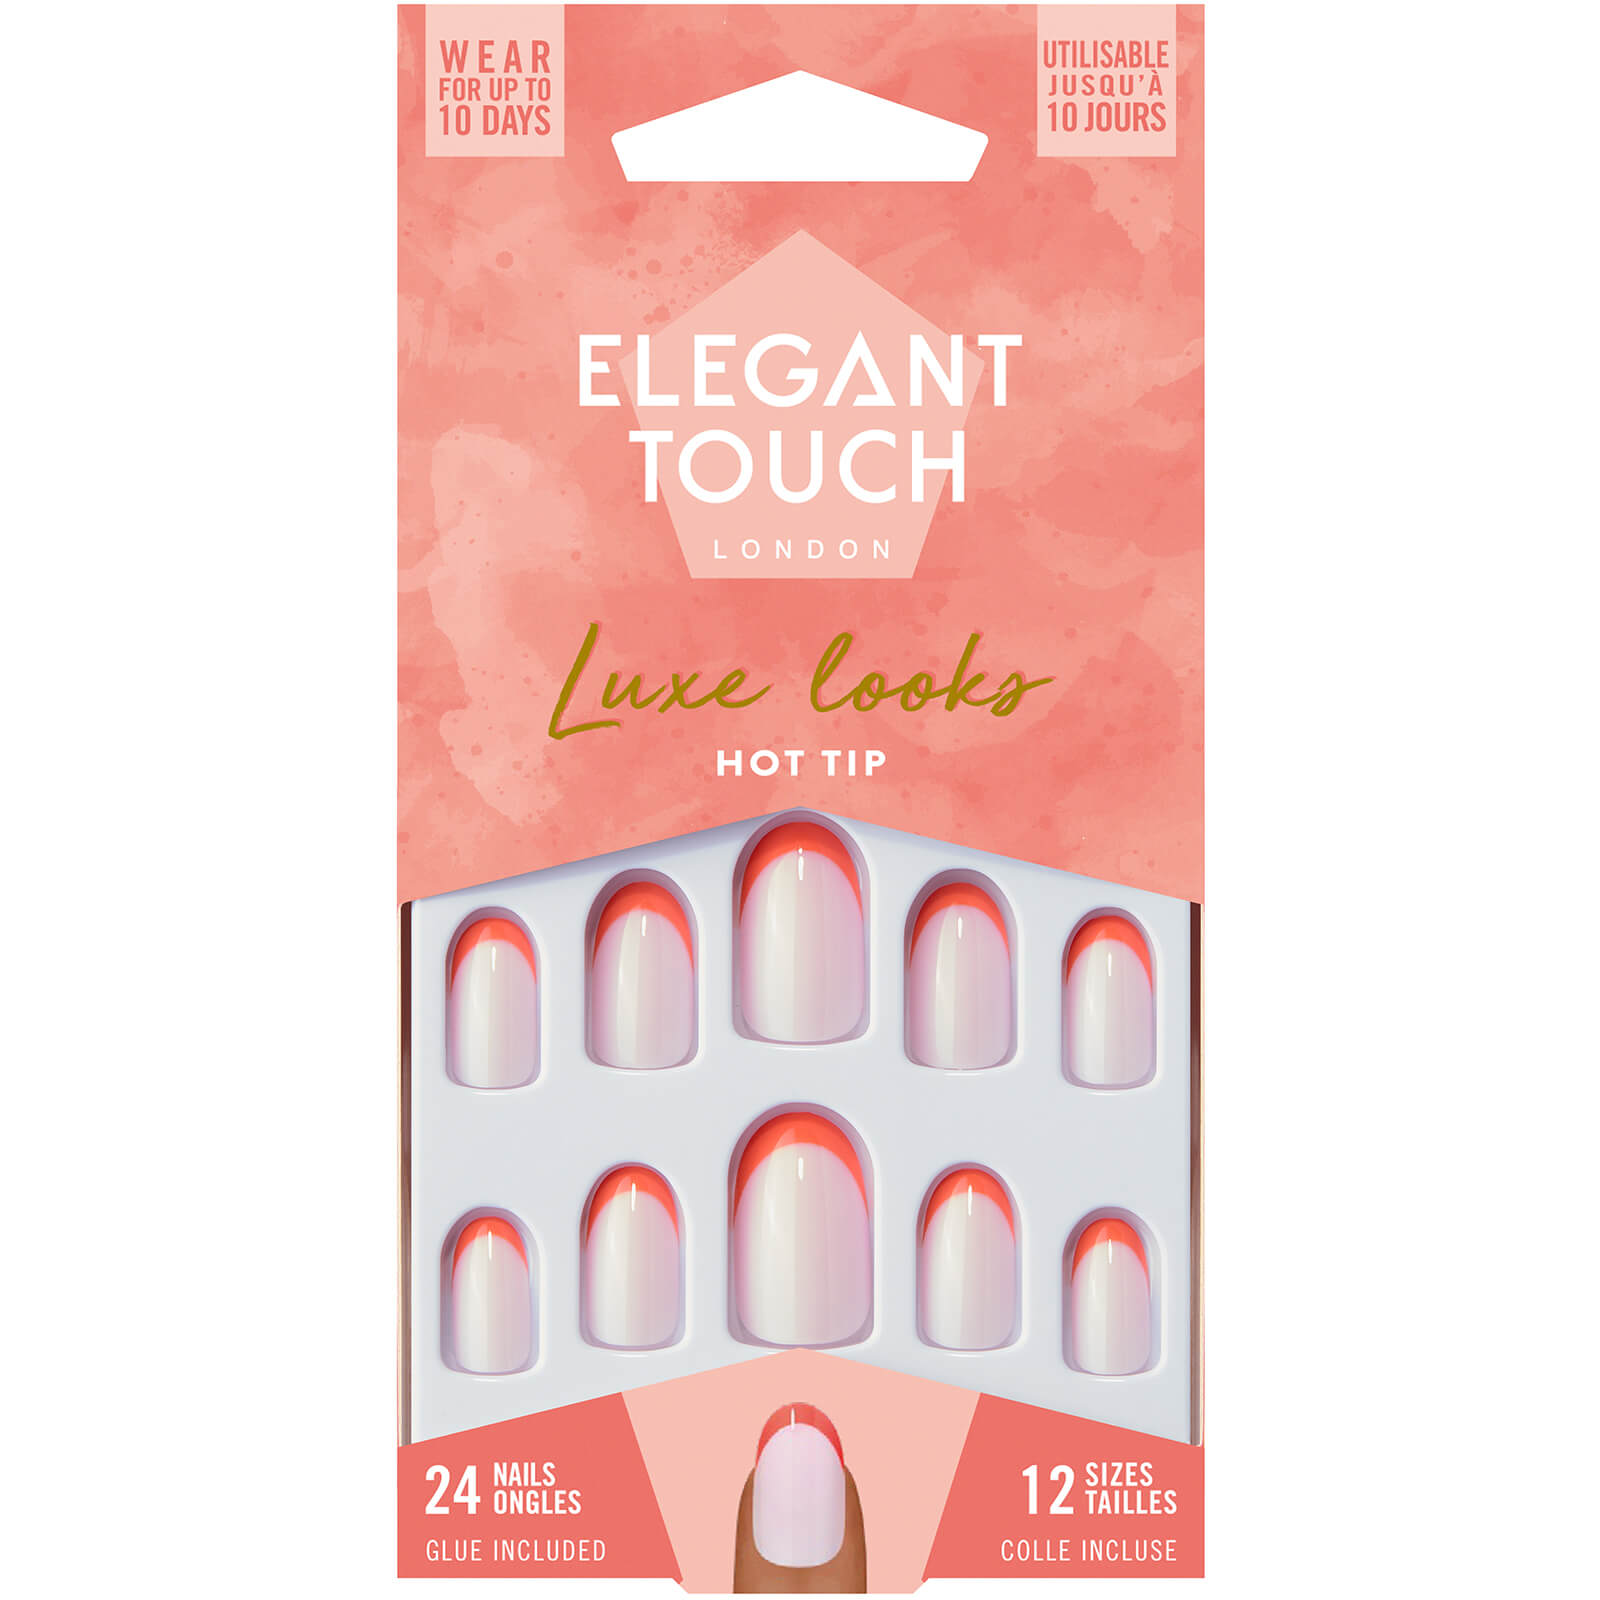 Elegant Touch False Nails – Hot Tip lookfantastic.com imagine